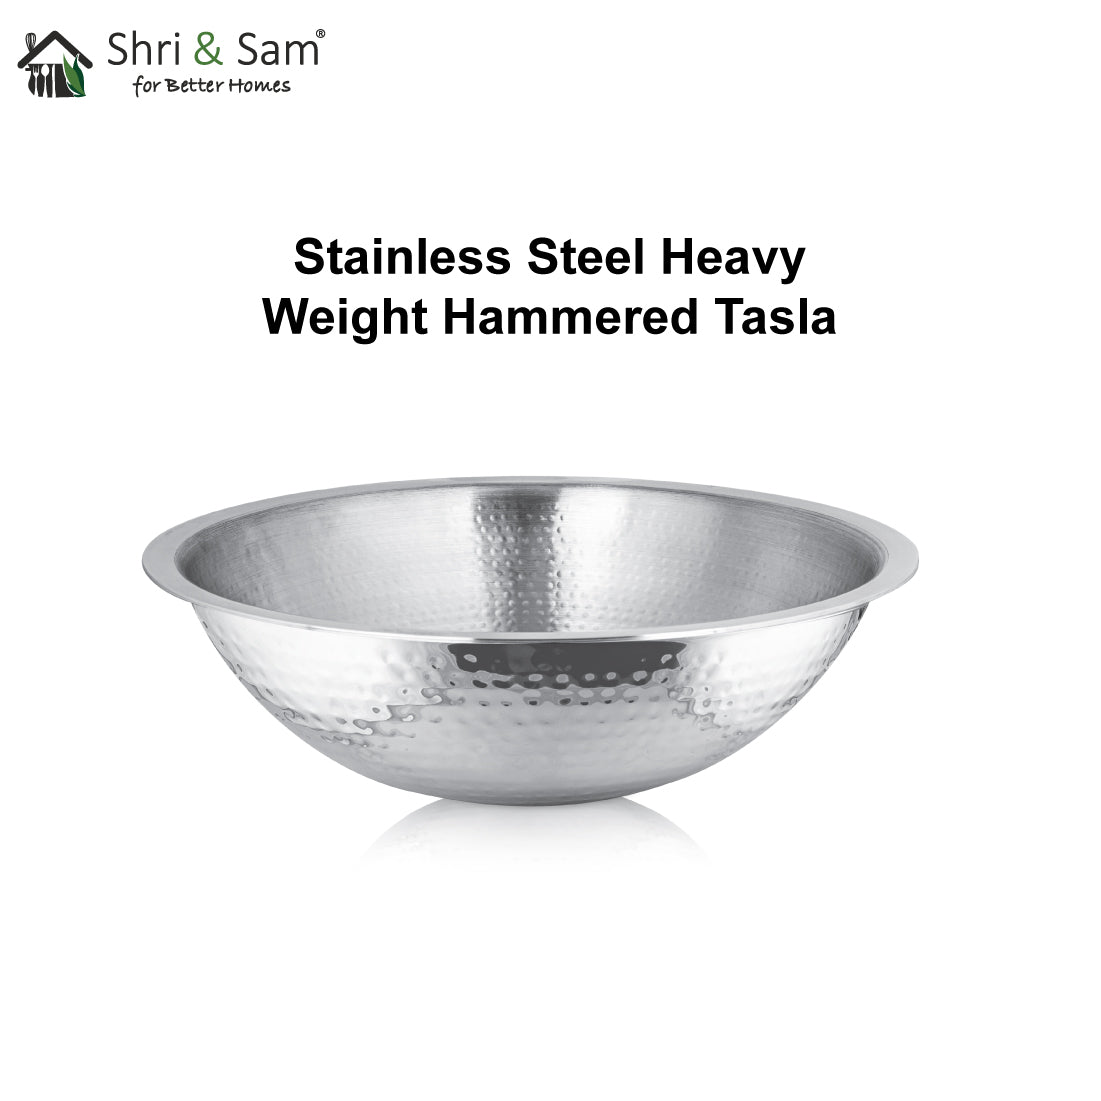 Stainless Steel Heavy Weight Hammered Tasla